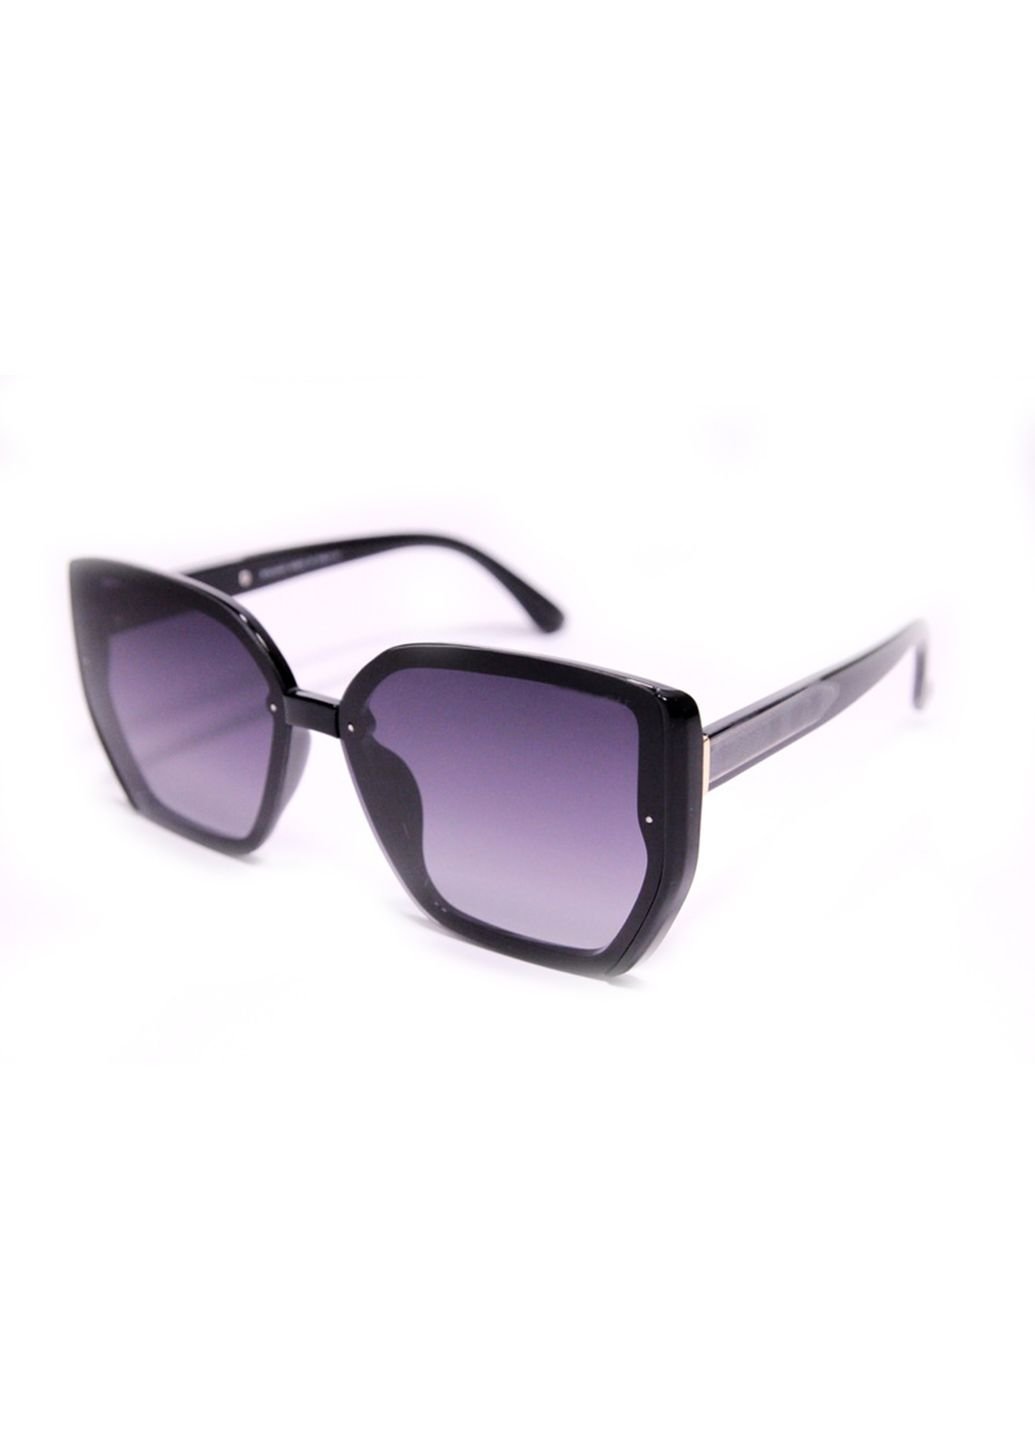 Купить Женские солнцезащитные очки Merlini BVLP8703 100290 - Фиолетовый в интернет-магазине